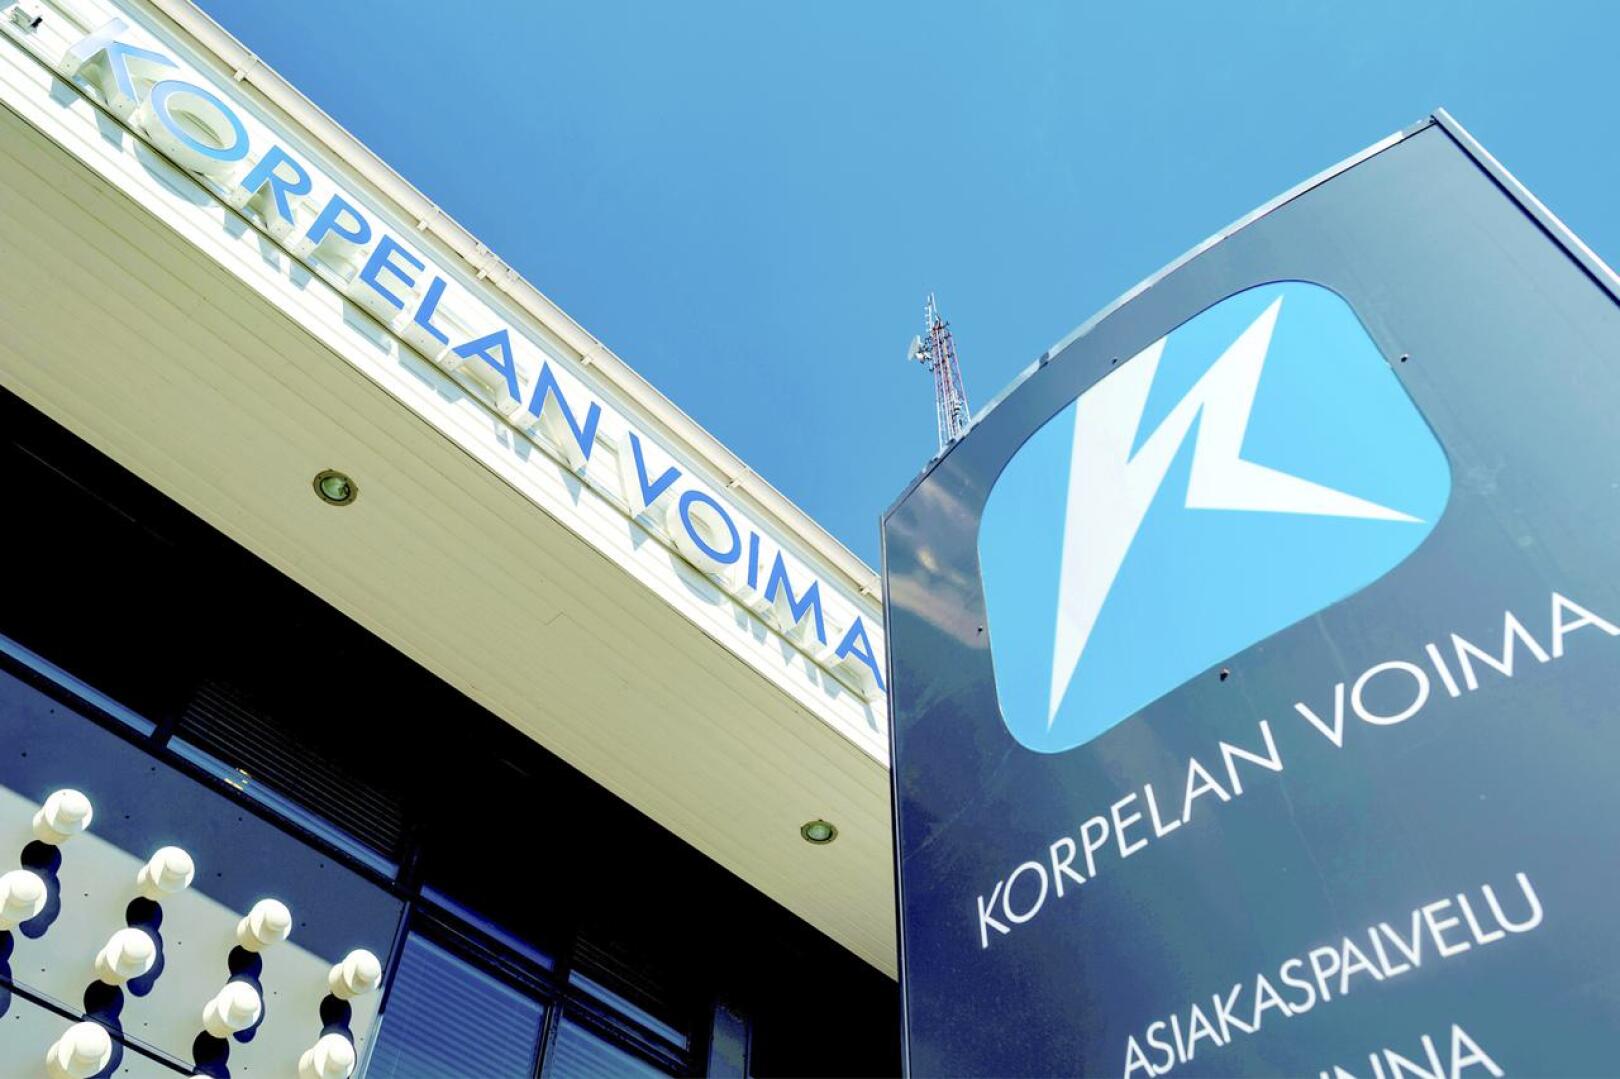 Korpelan Energia on Korpelan Voiman tytäryhtiö.